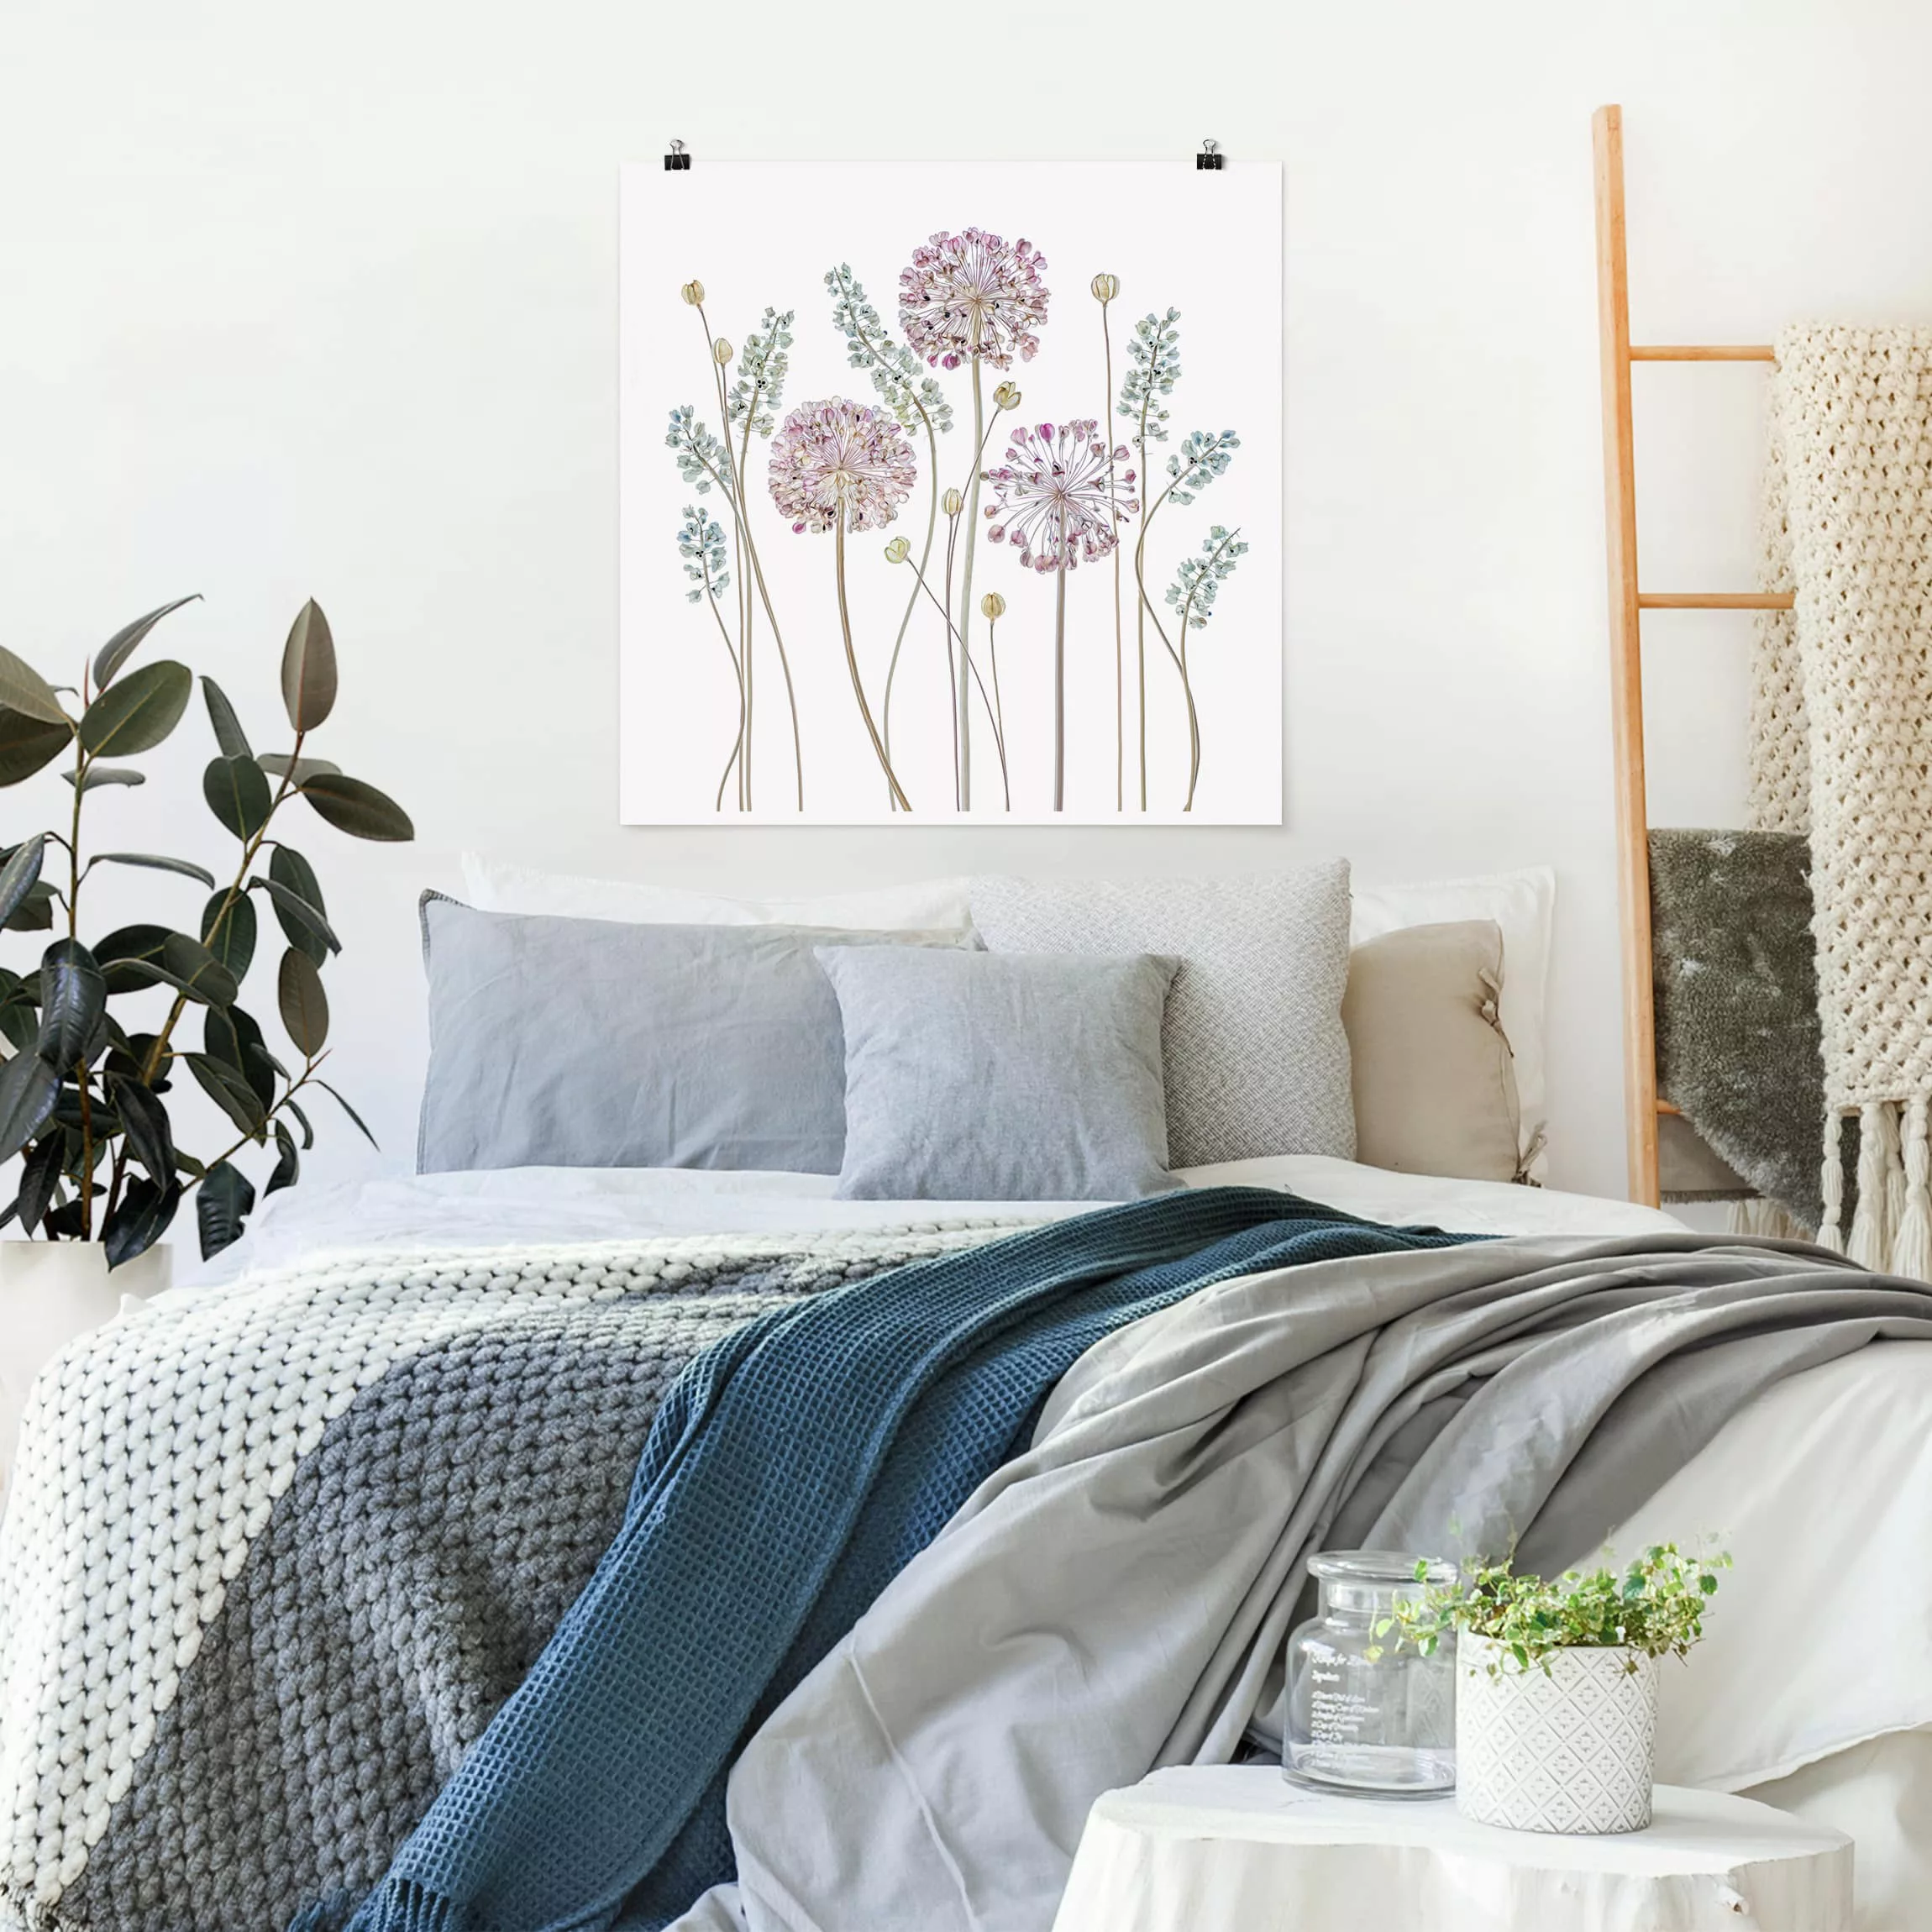 Poster Blumen - Quadrat Allium Illustration günstig online kaufen